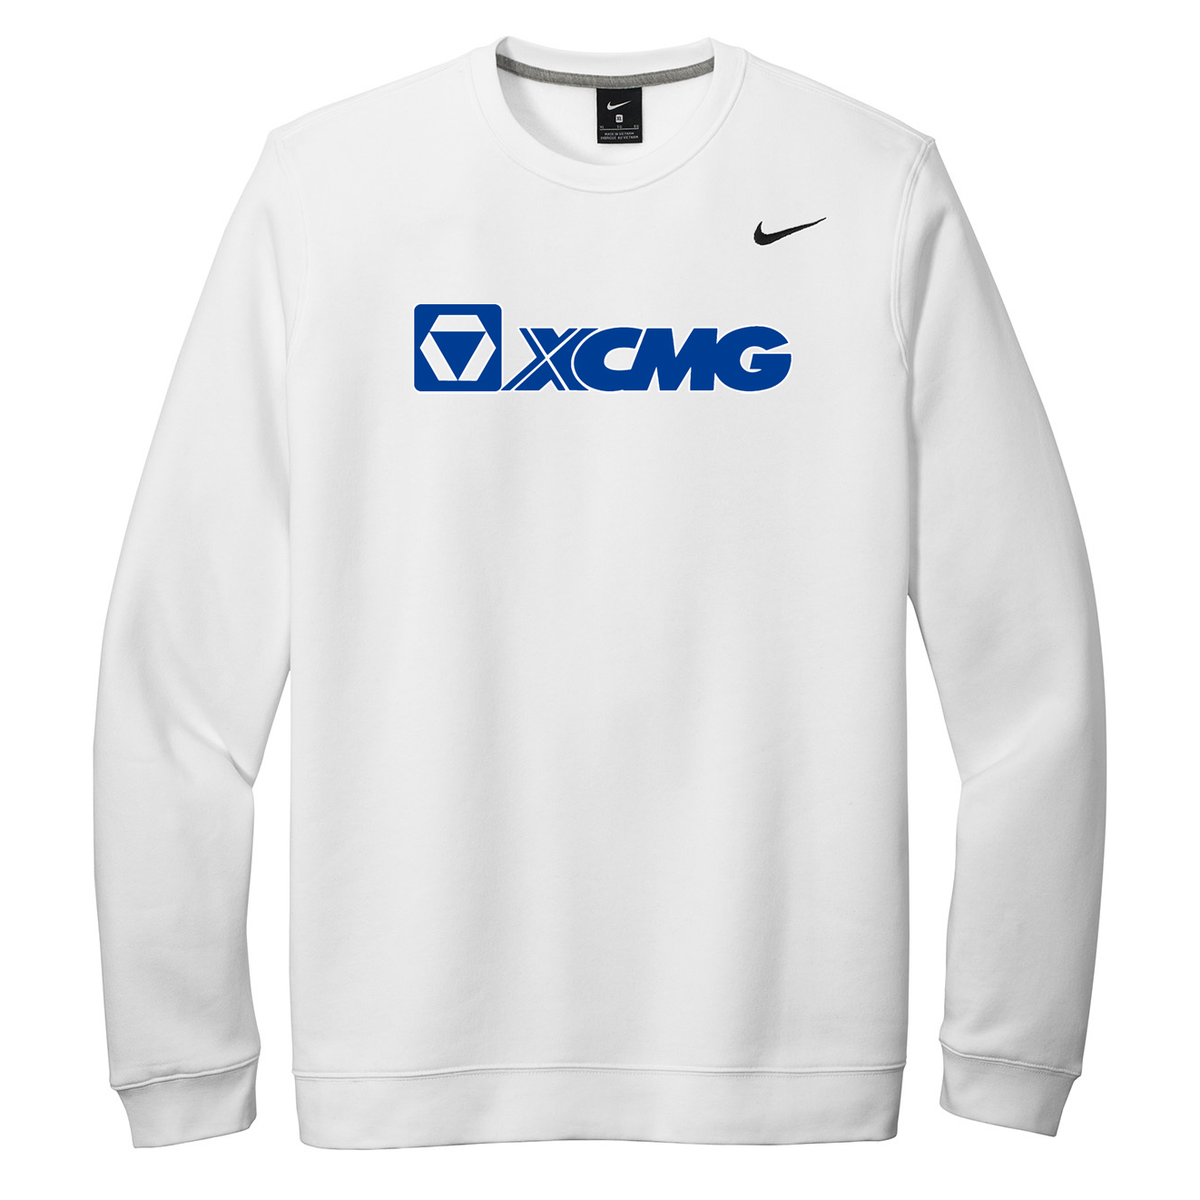 XCMG Nike Fleece Crew Neck